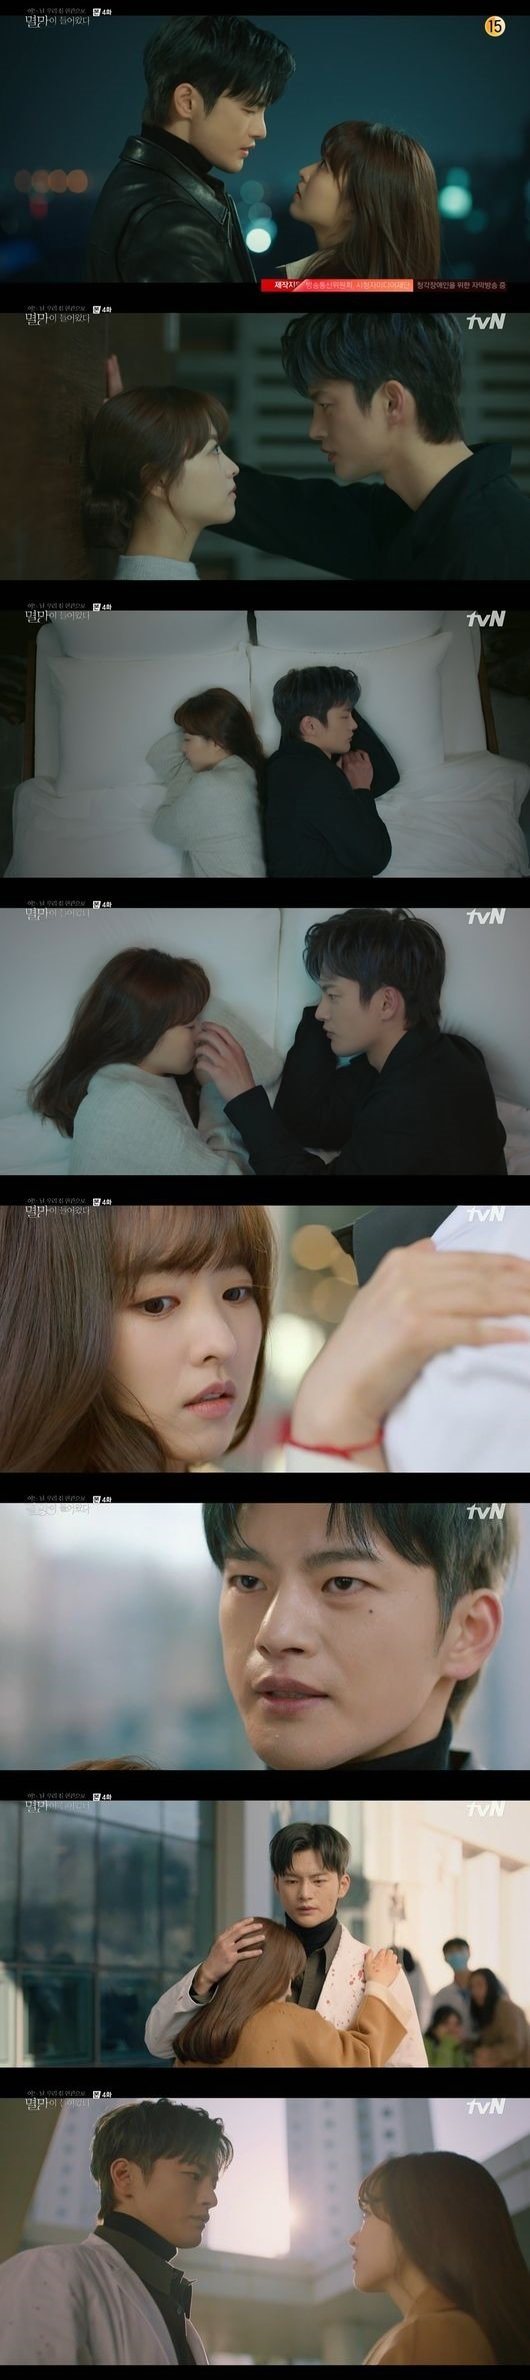 18일 방송된 tvN 드라마 '어느 날 우리 집 현관으로 멸망이 들어왔다' 캡처 화면